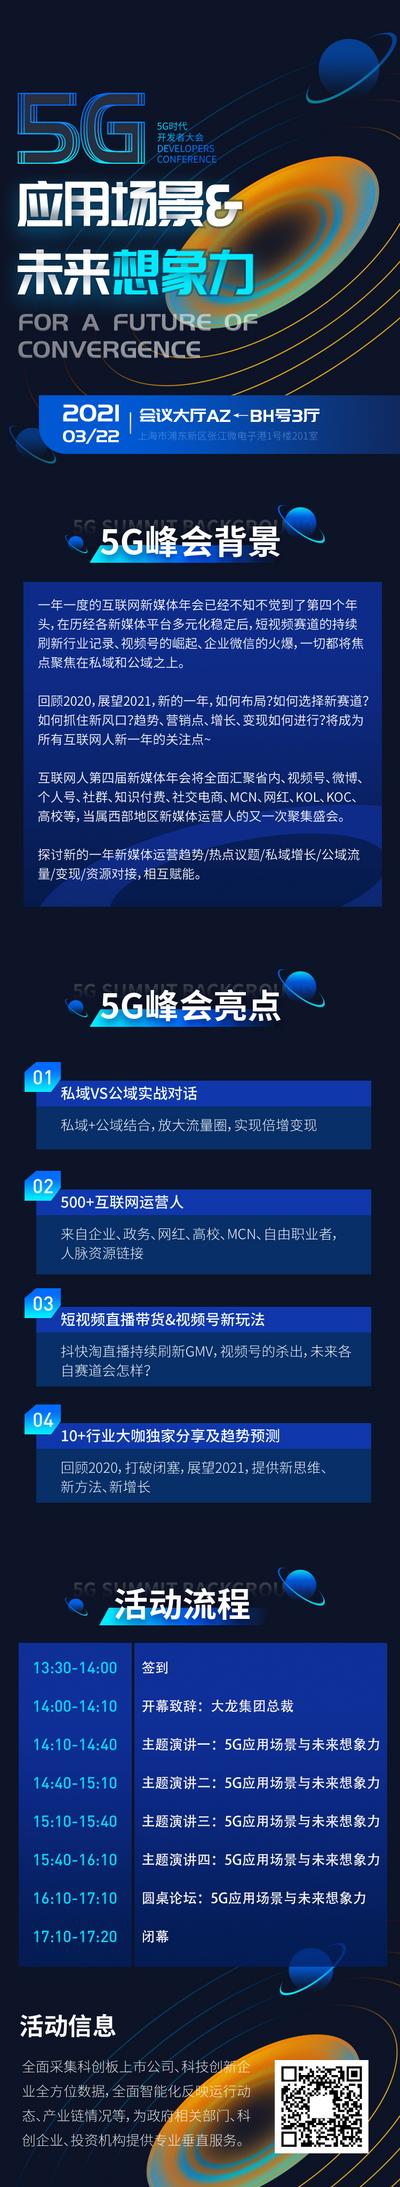 【南门网】广告 海报 专题 5G 峰会 活动 流程 网页 H5